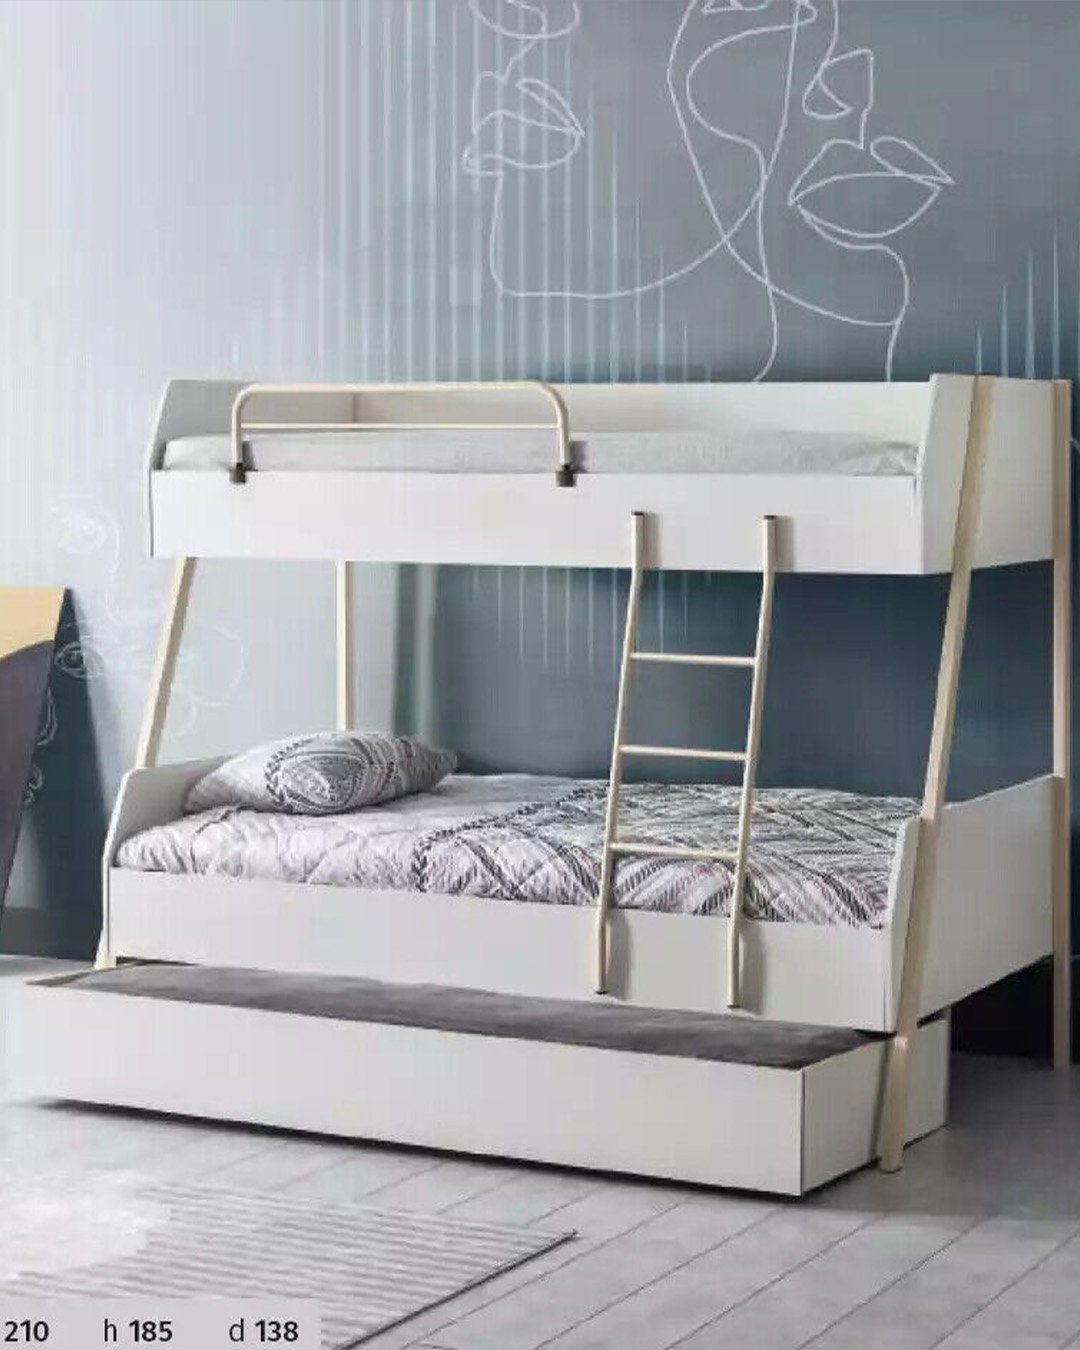 JVmoebel Etagenbett, Jugendbett Weiß Kinderbett Bett Kinderzimmer Modernes Design